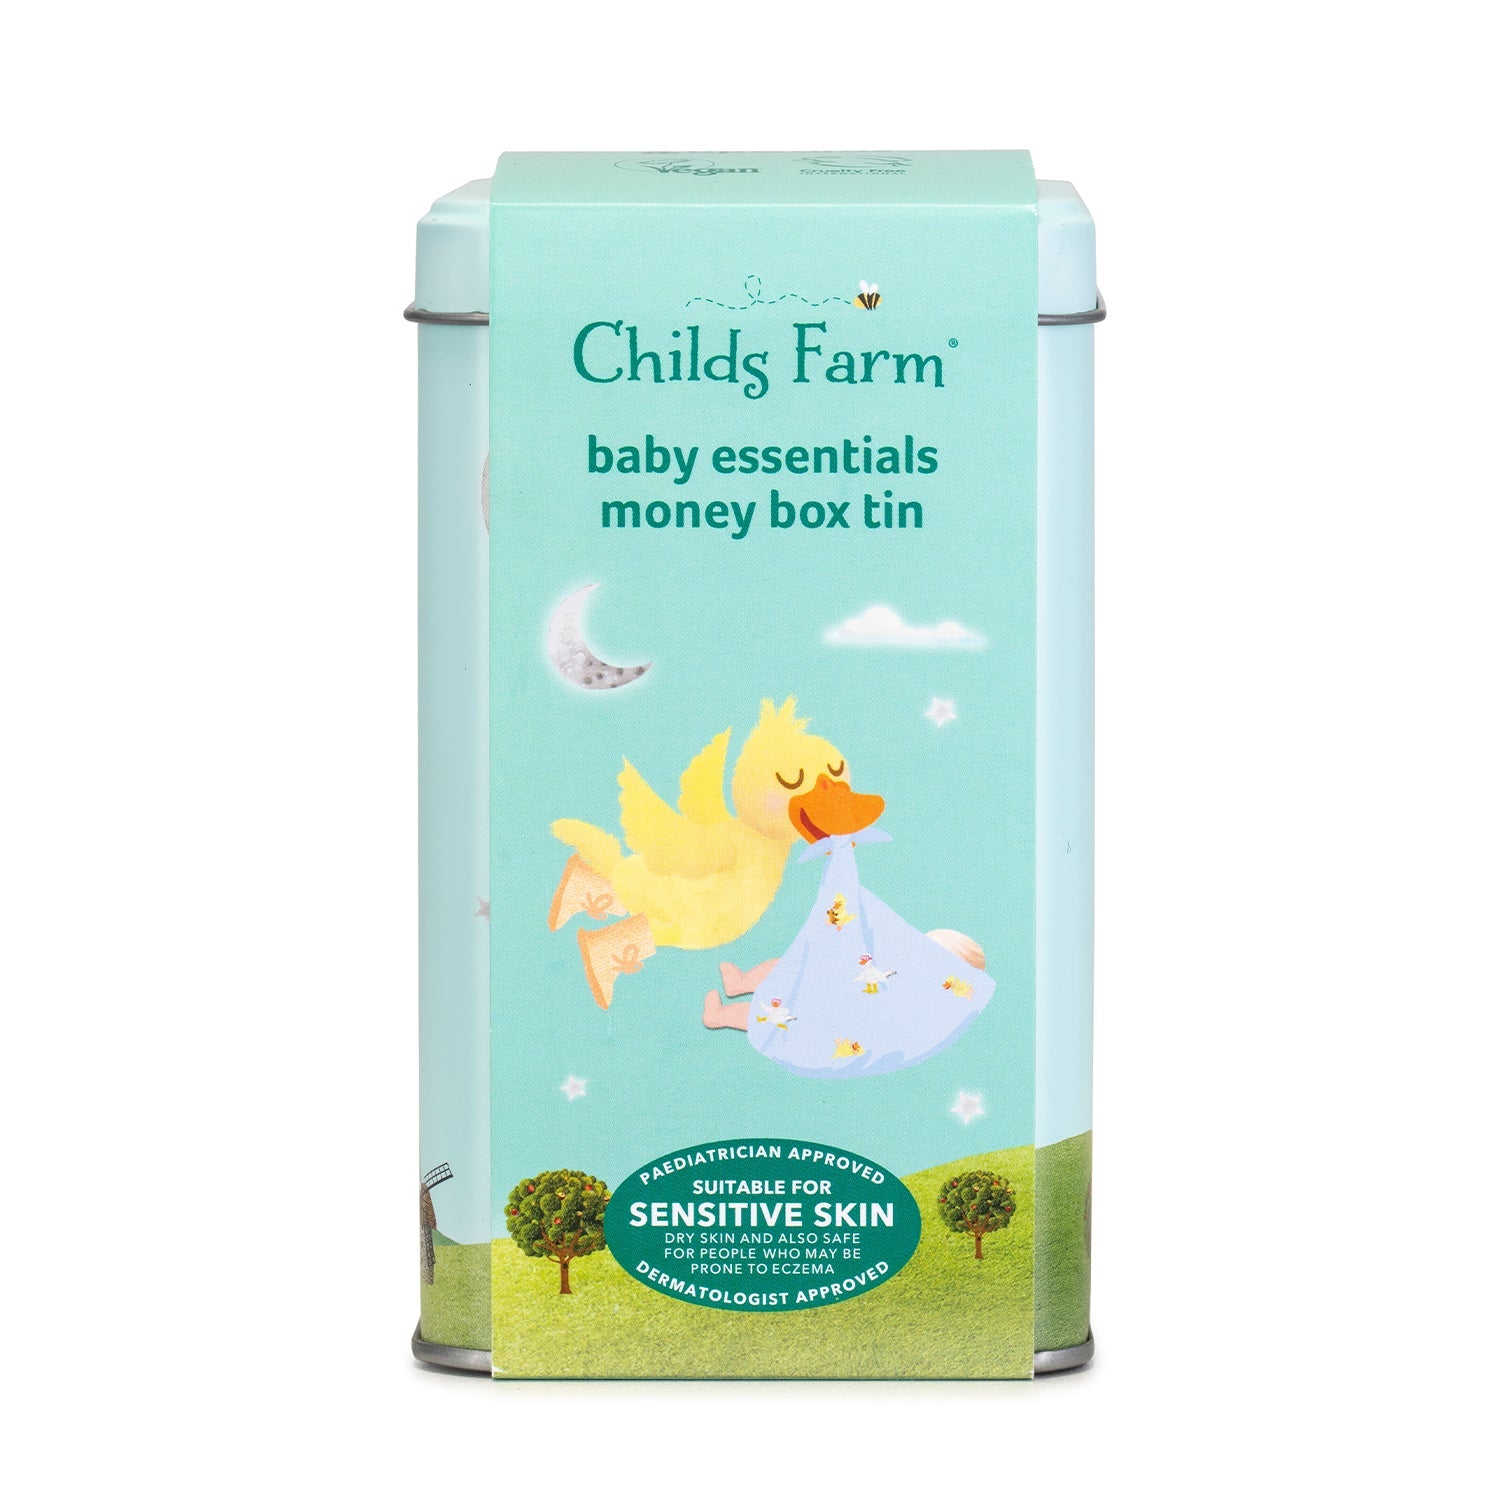 Childs Farm baby essentials money box tin